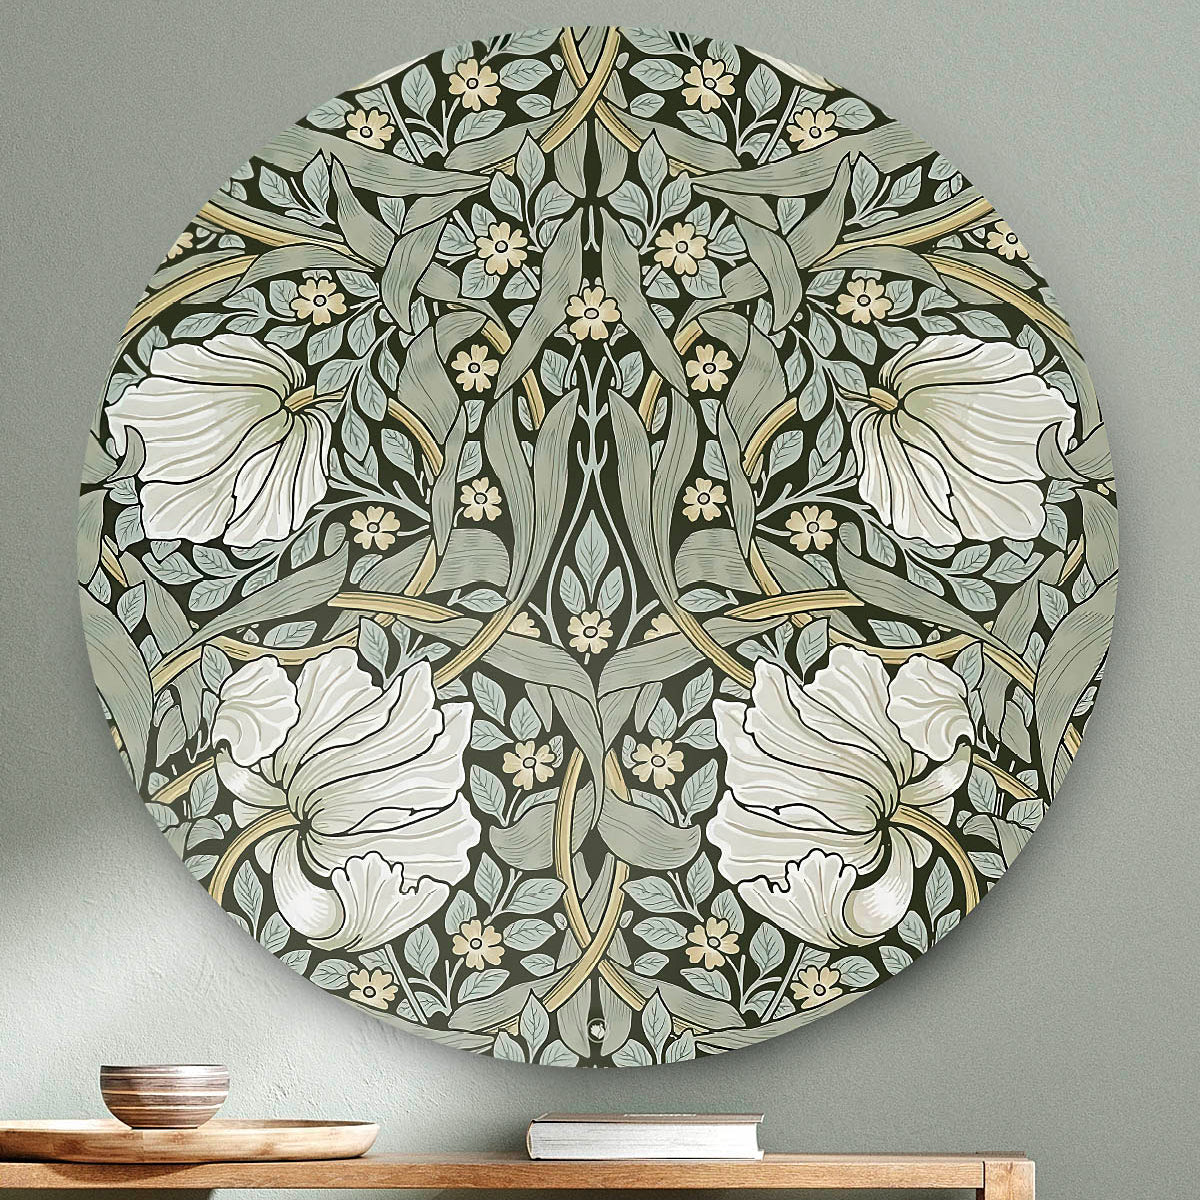 Wandcirkel met een groen patroon met witte bloemen tegen een lichte muur en een houten tafel